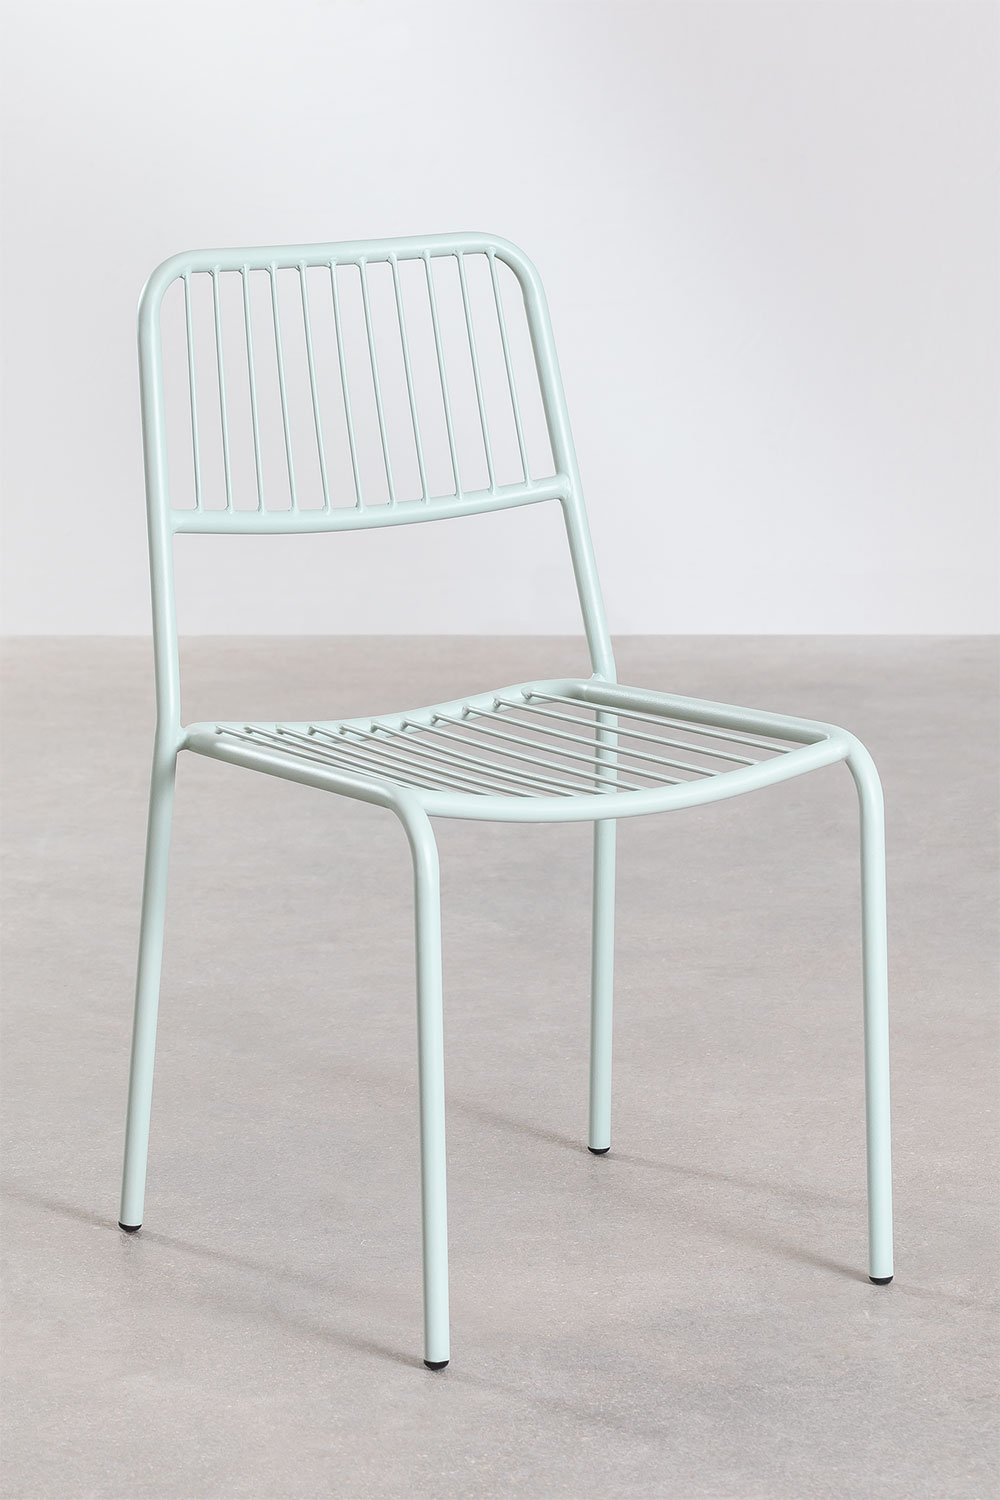 Confezione da 2 sedie da giardino impilabili Elton, immagine della galleria 1